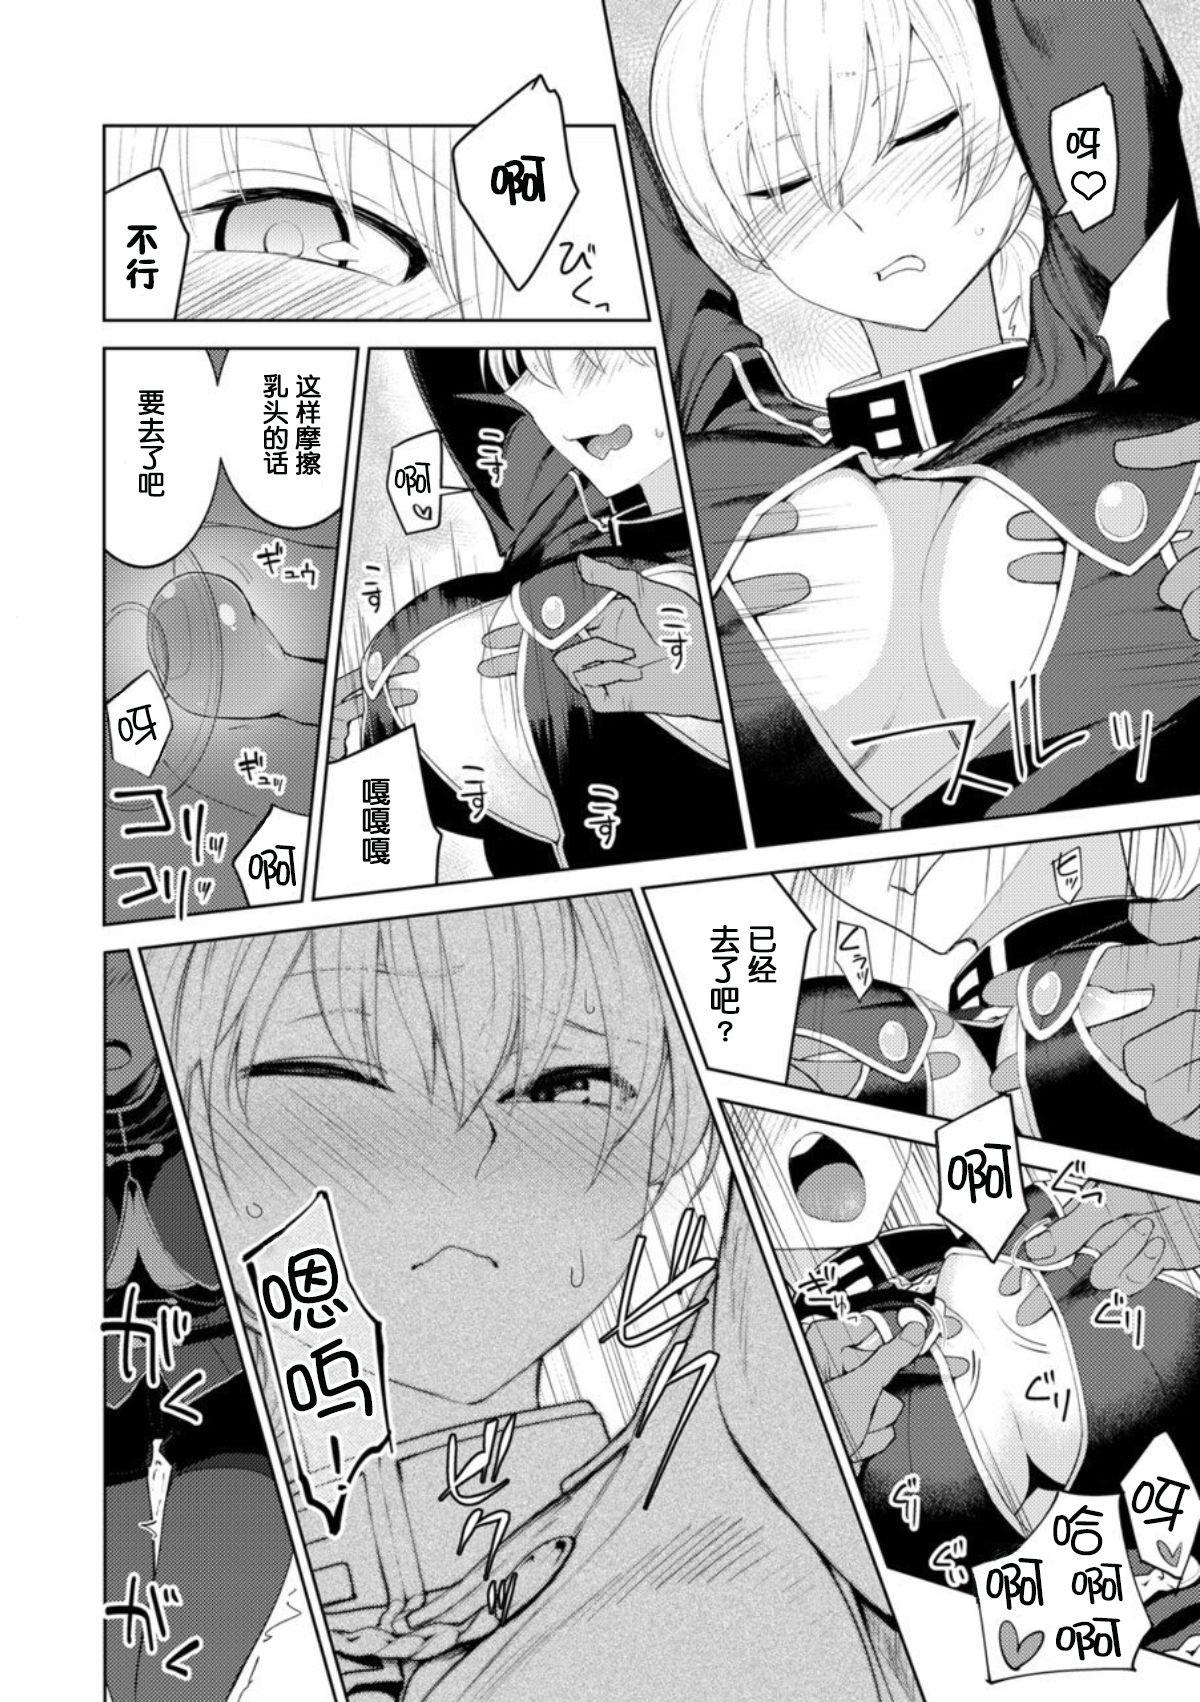 Strip Persis vs Oppai Seijin - Sennen sensou aigis Swinger - Page 7